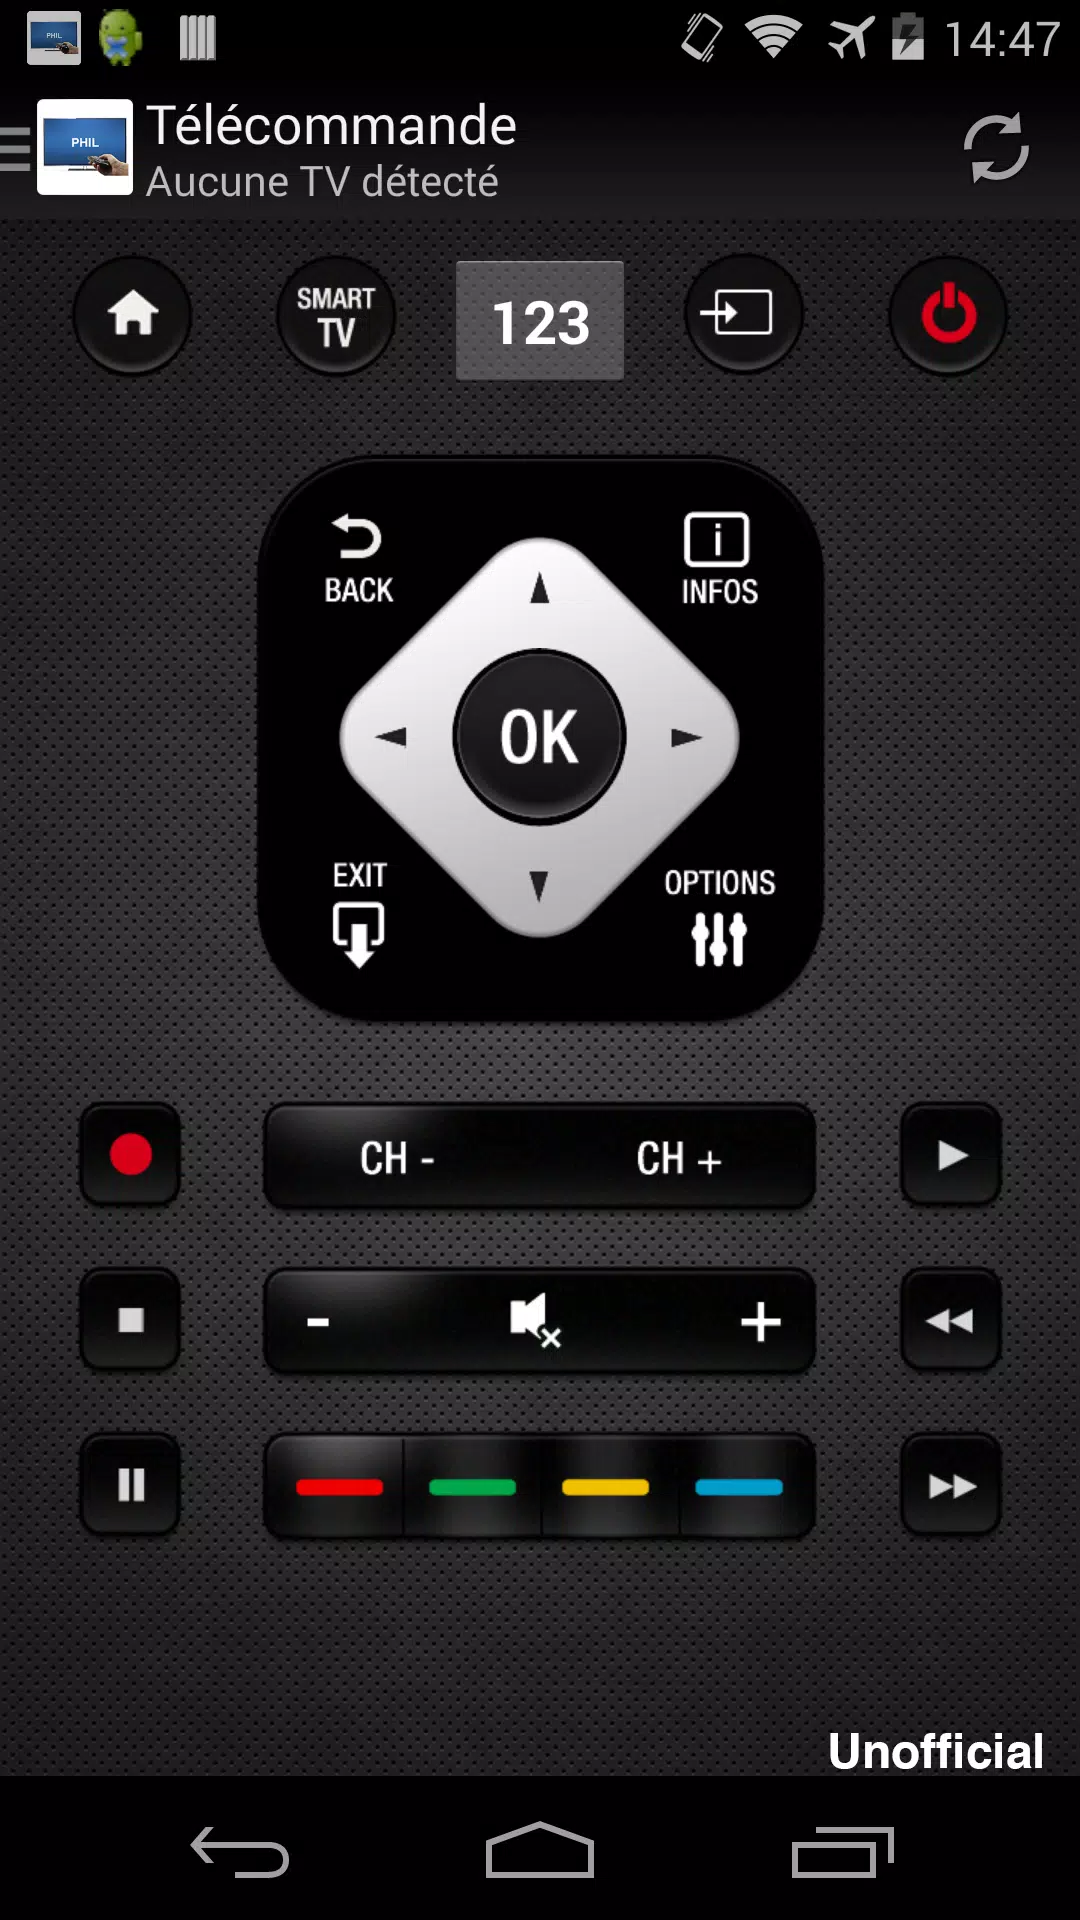 Télécommande pour TV Philips APK pour Android Télécharger